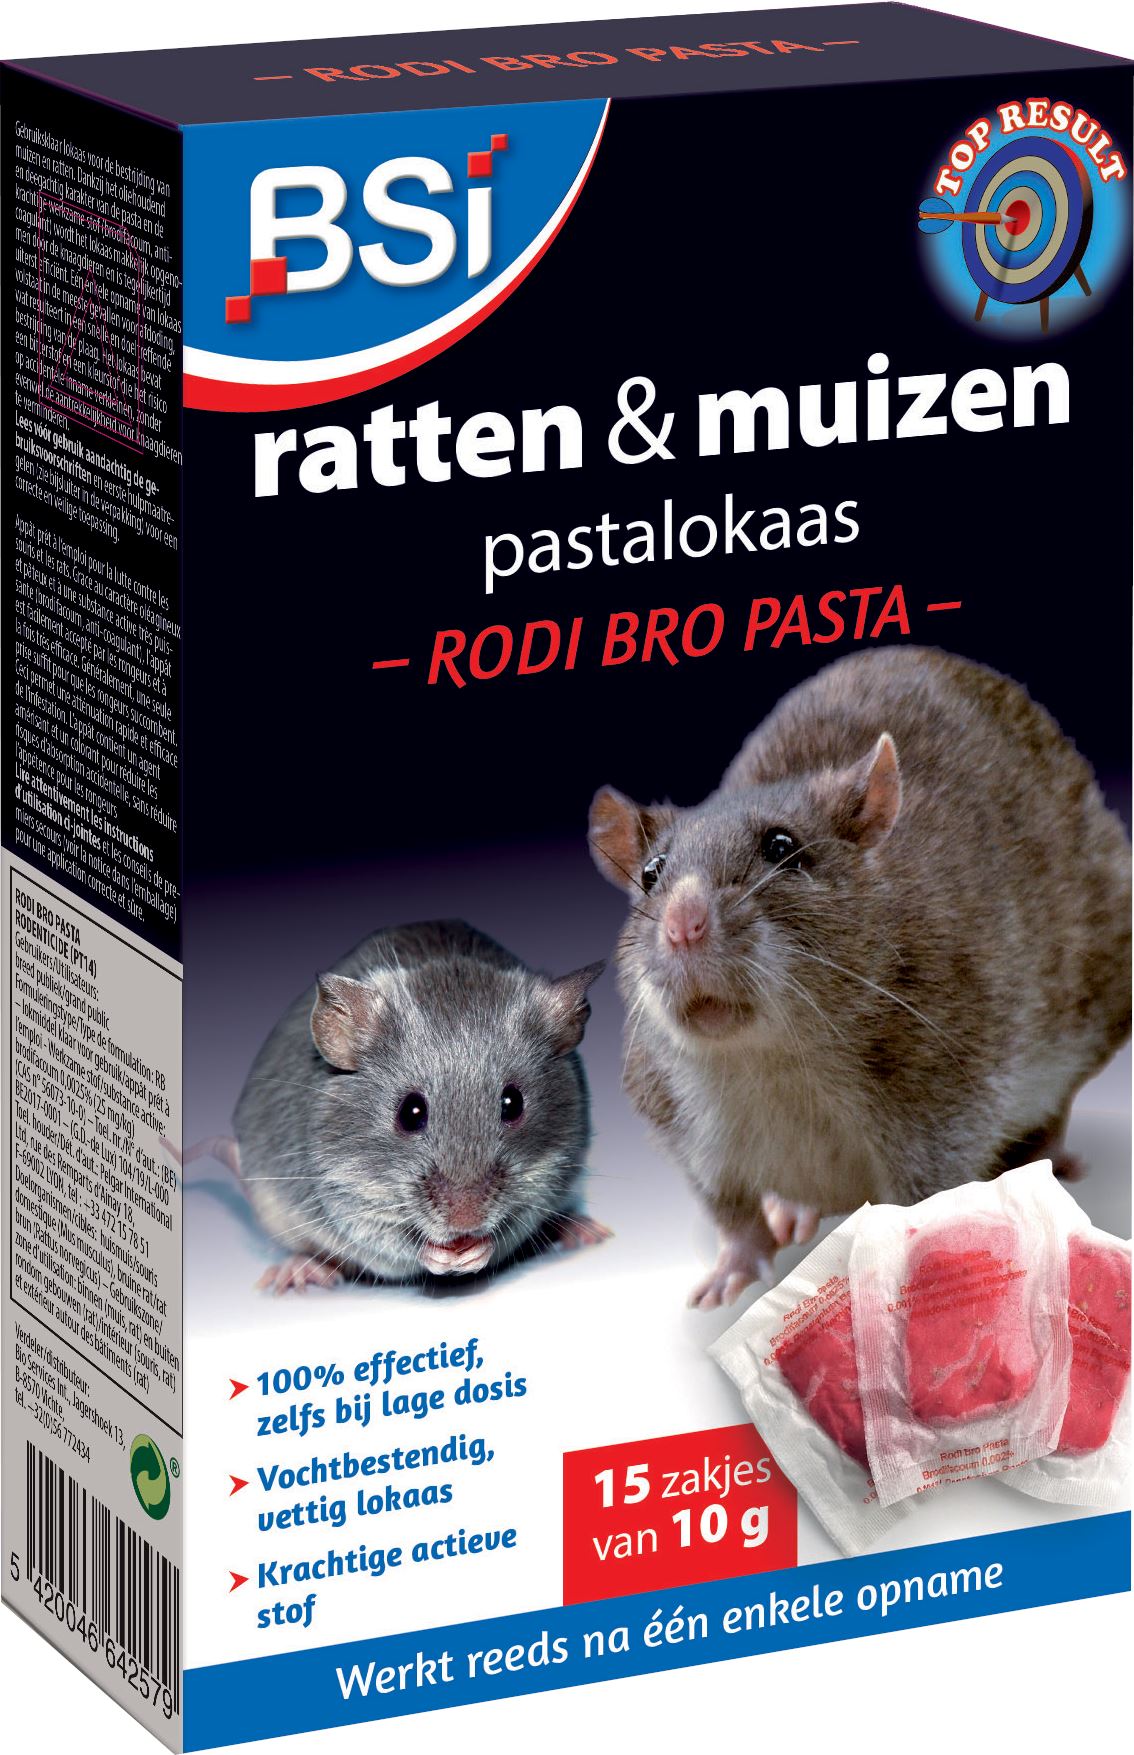 Rodi-Bro-Pasta-150g-15x10g-tegen-ratten-en-muizen